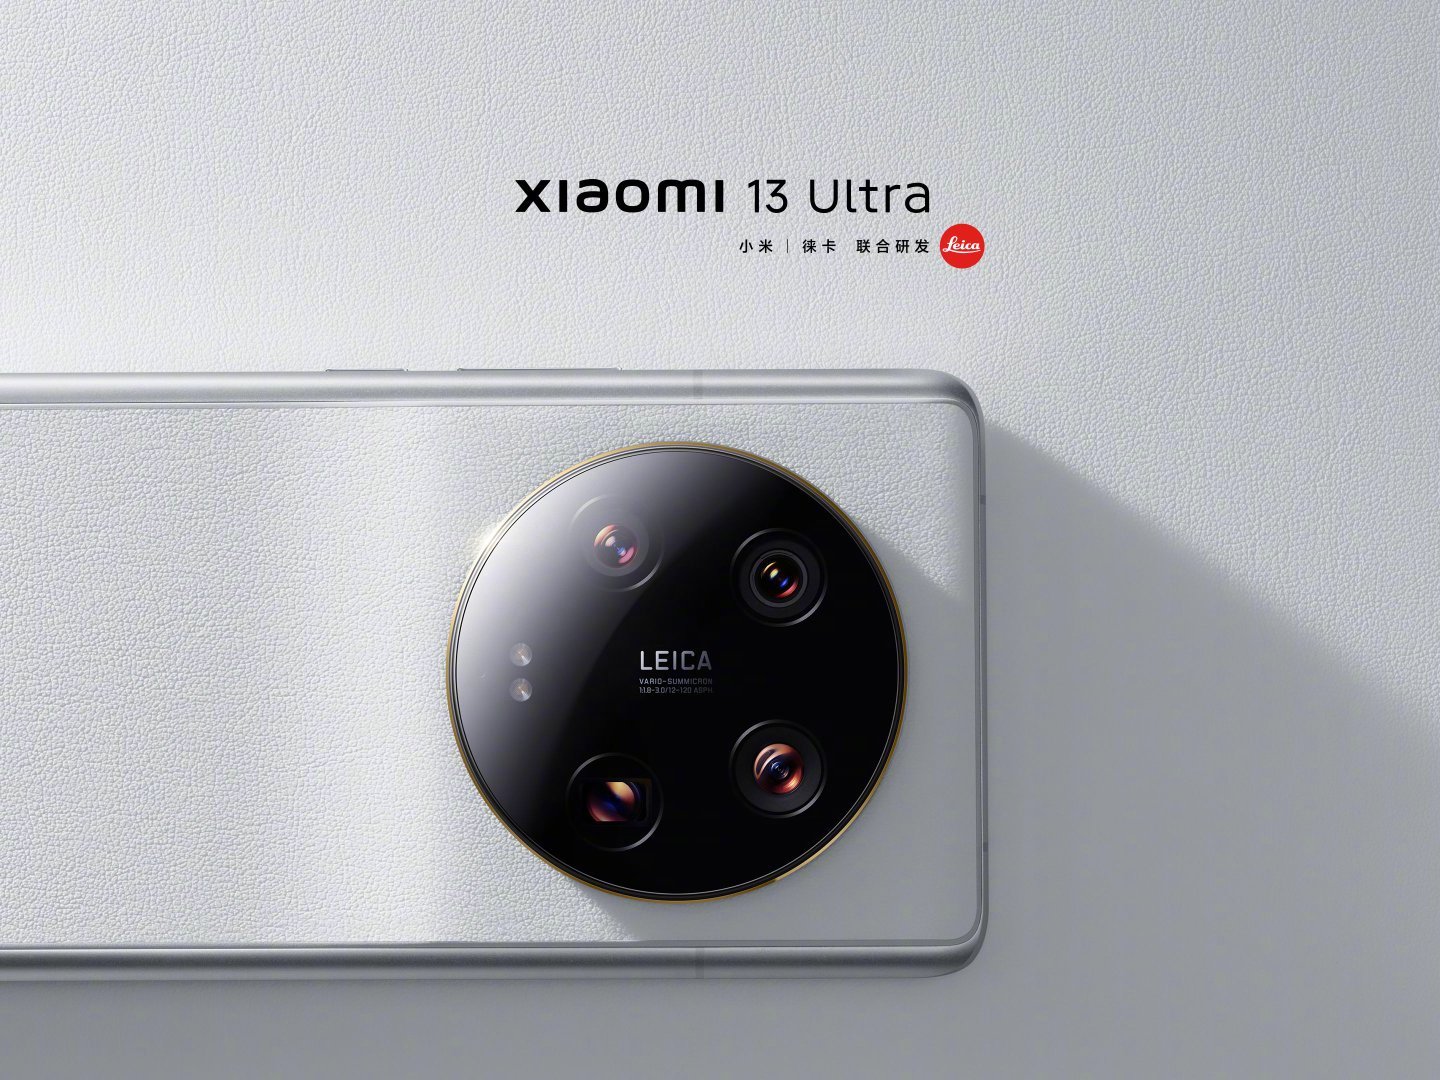 Pindai gambar Xiaomi 13 Ultra sebelum tanggal peluncuran - Gambar 3.